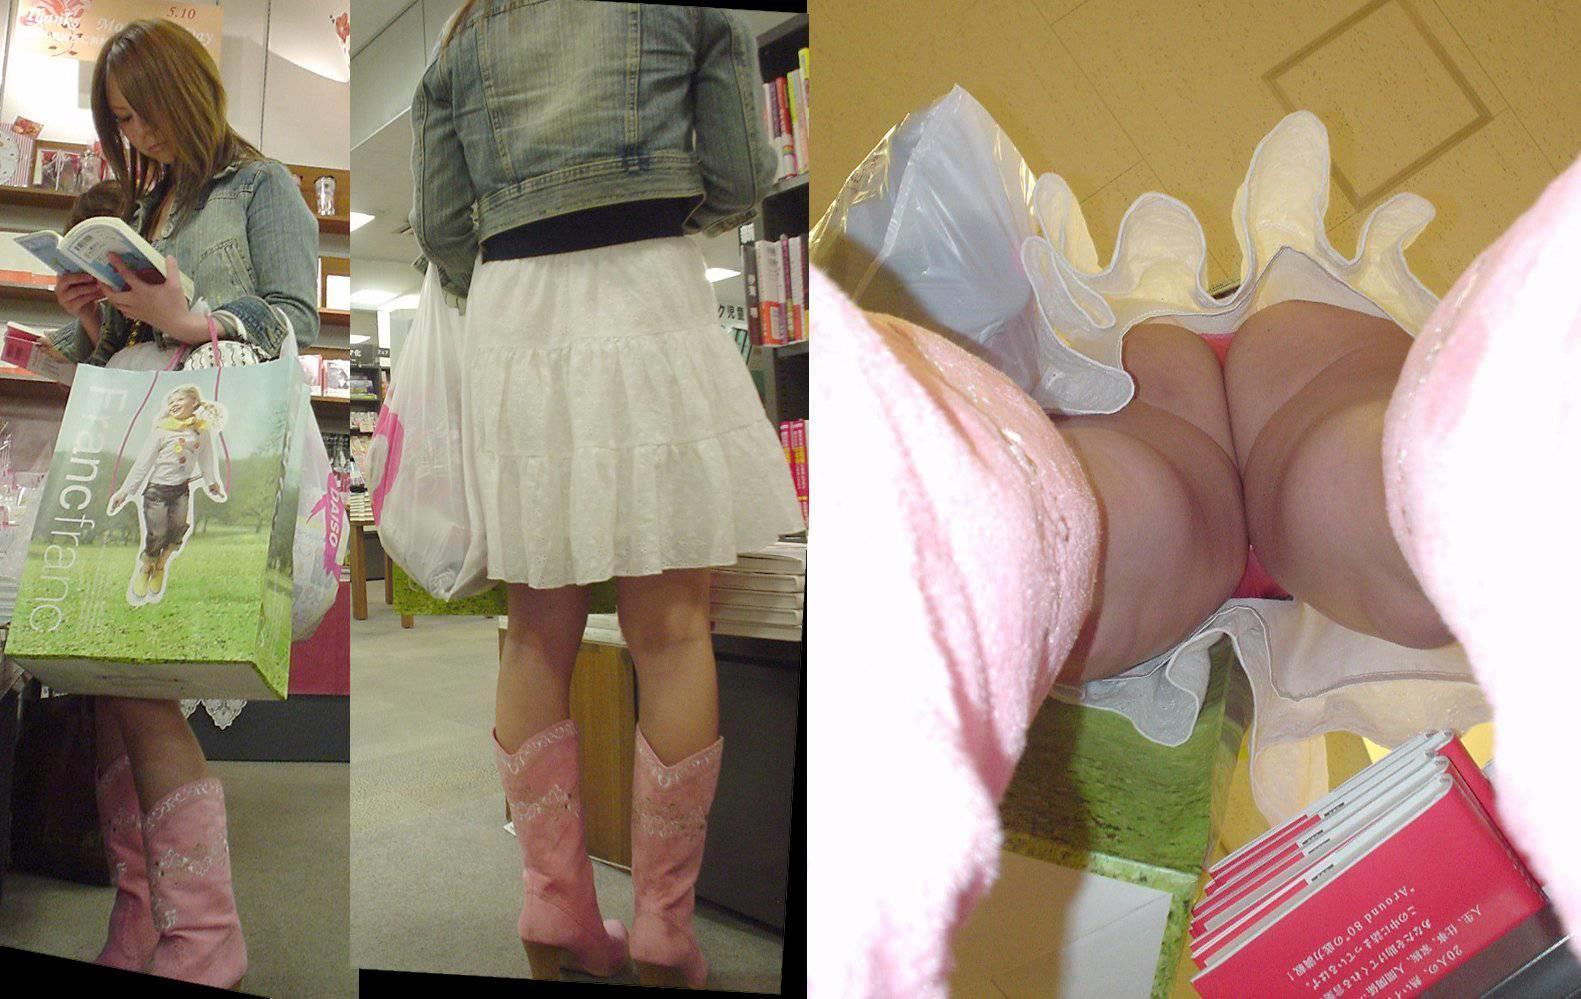 【逆さ撮り】ピンクTバックを穿いた素人娘のスカート内を接写撮りwの画像16枚目